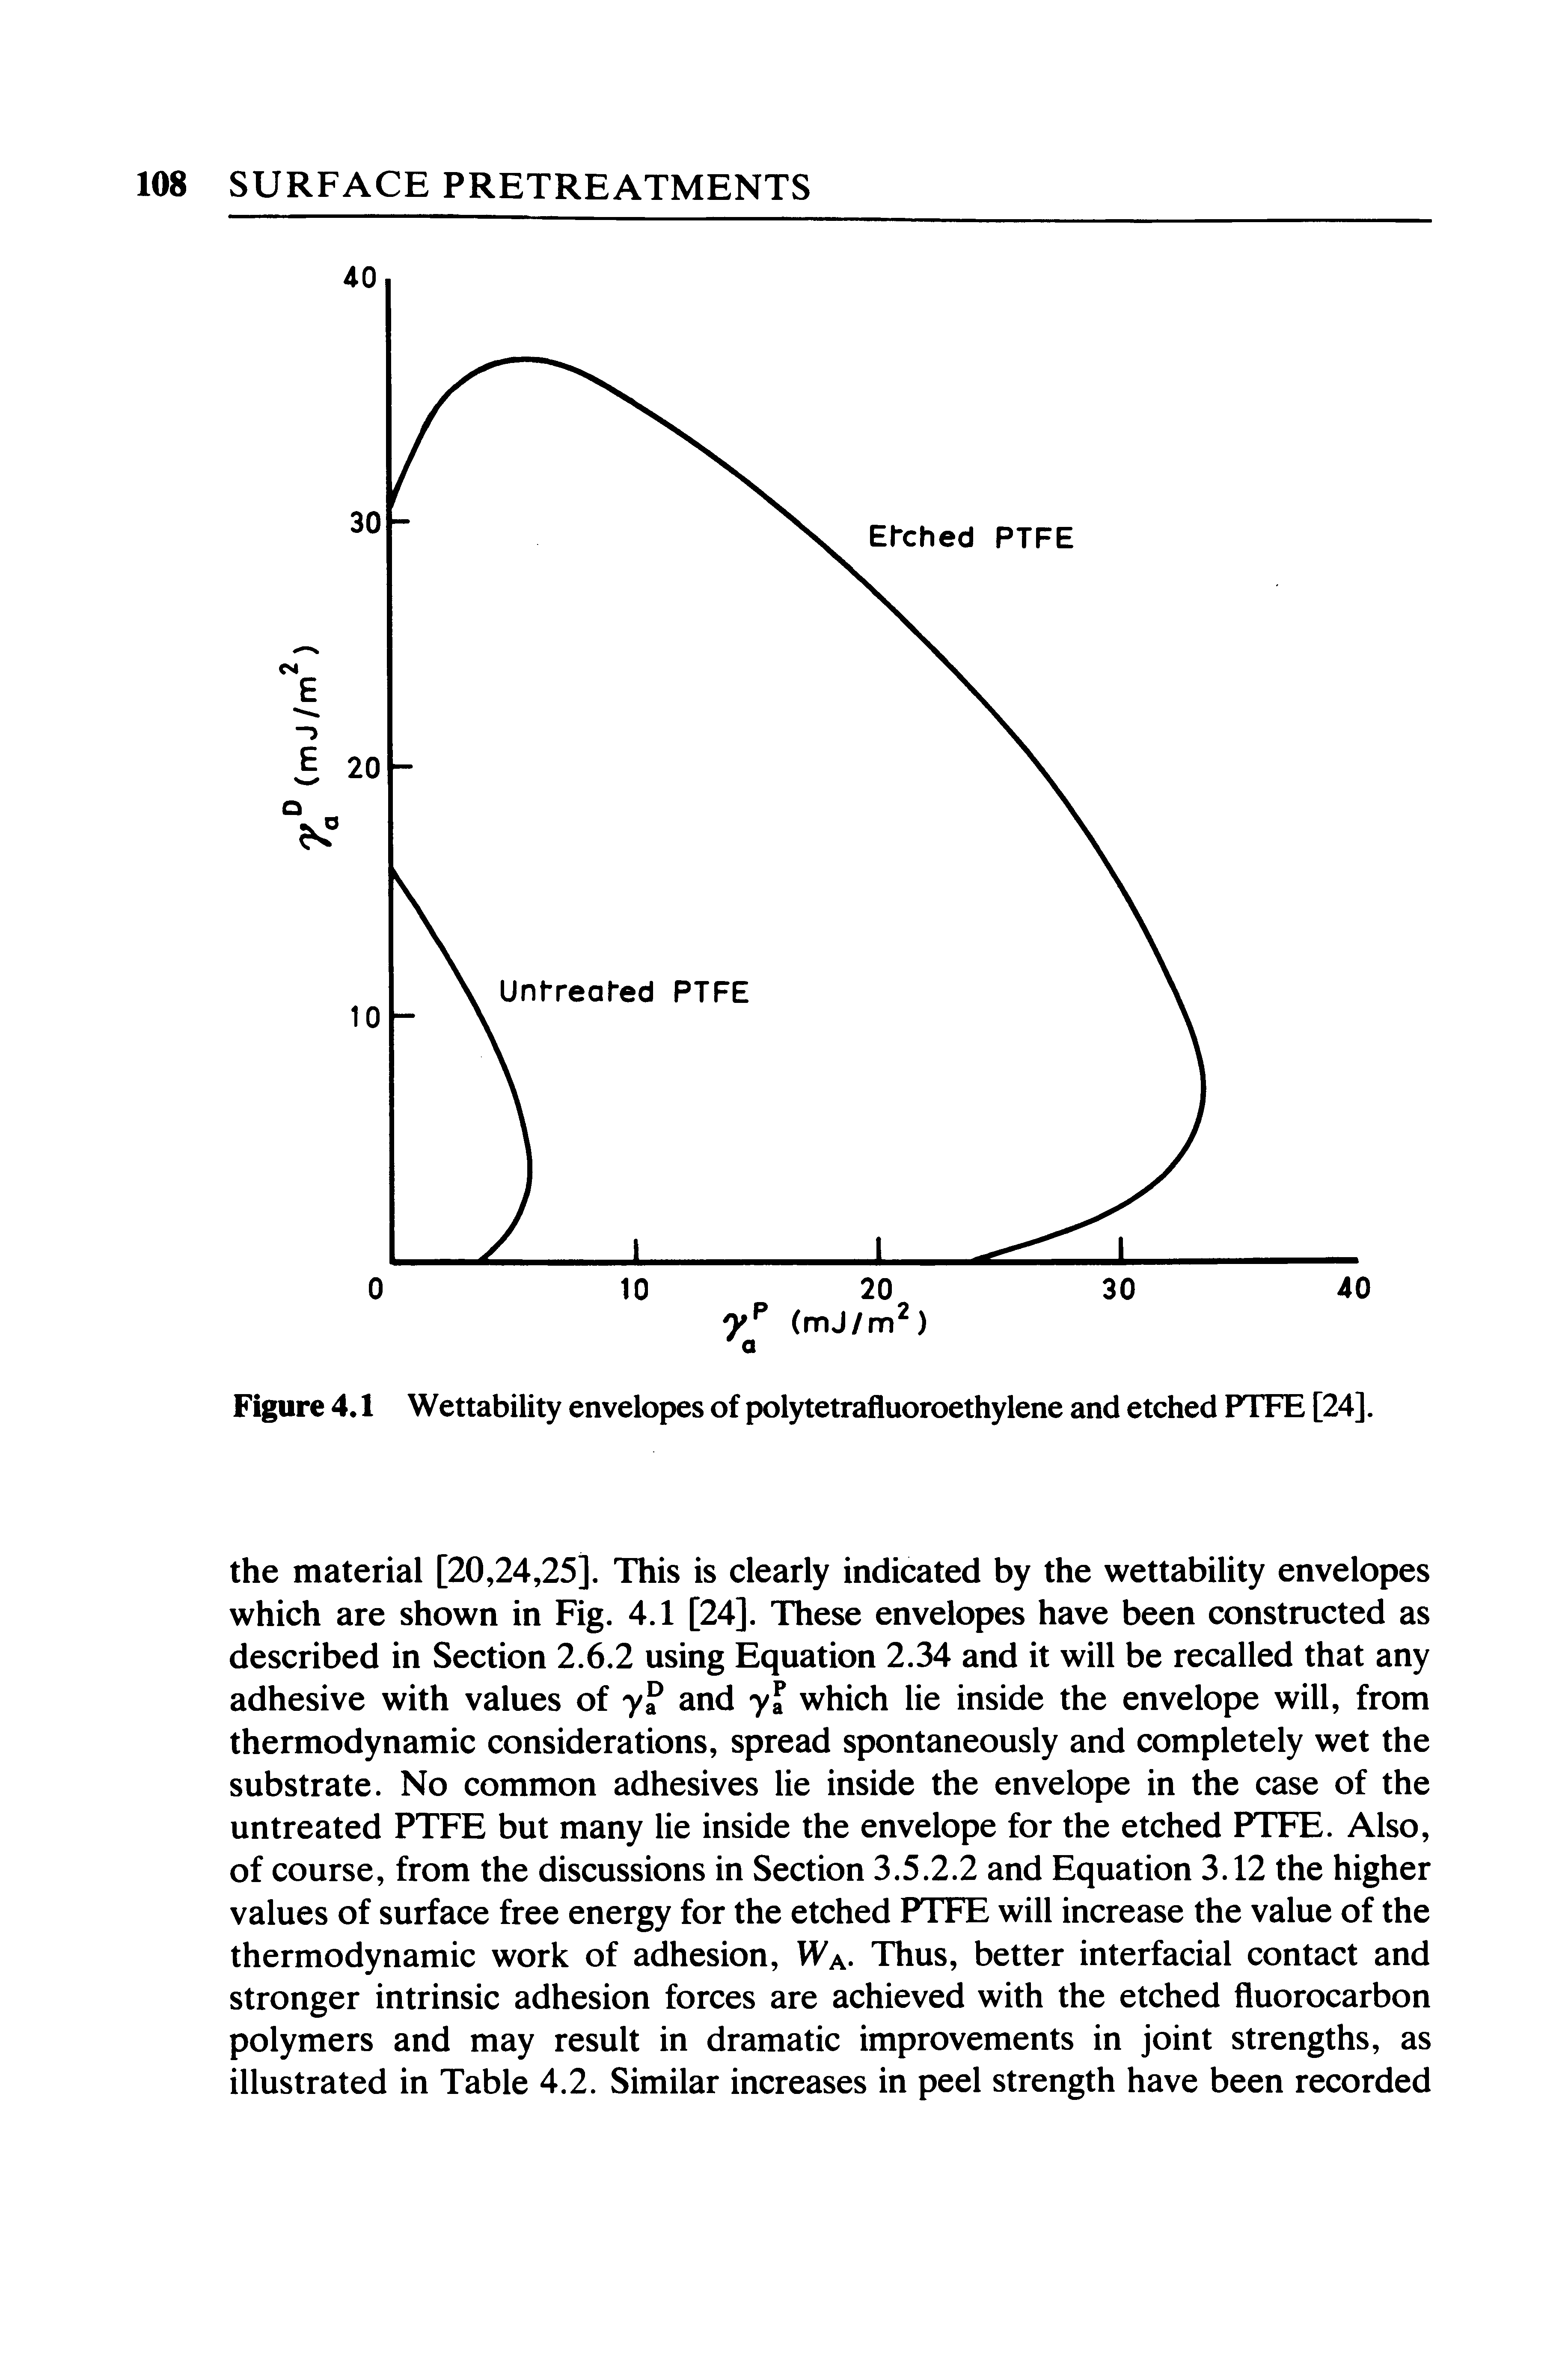 Figure 4.1 Wettability envelopes of polytetrafluoroethylene and etched PTFE [24].